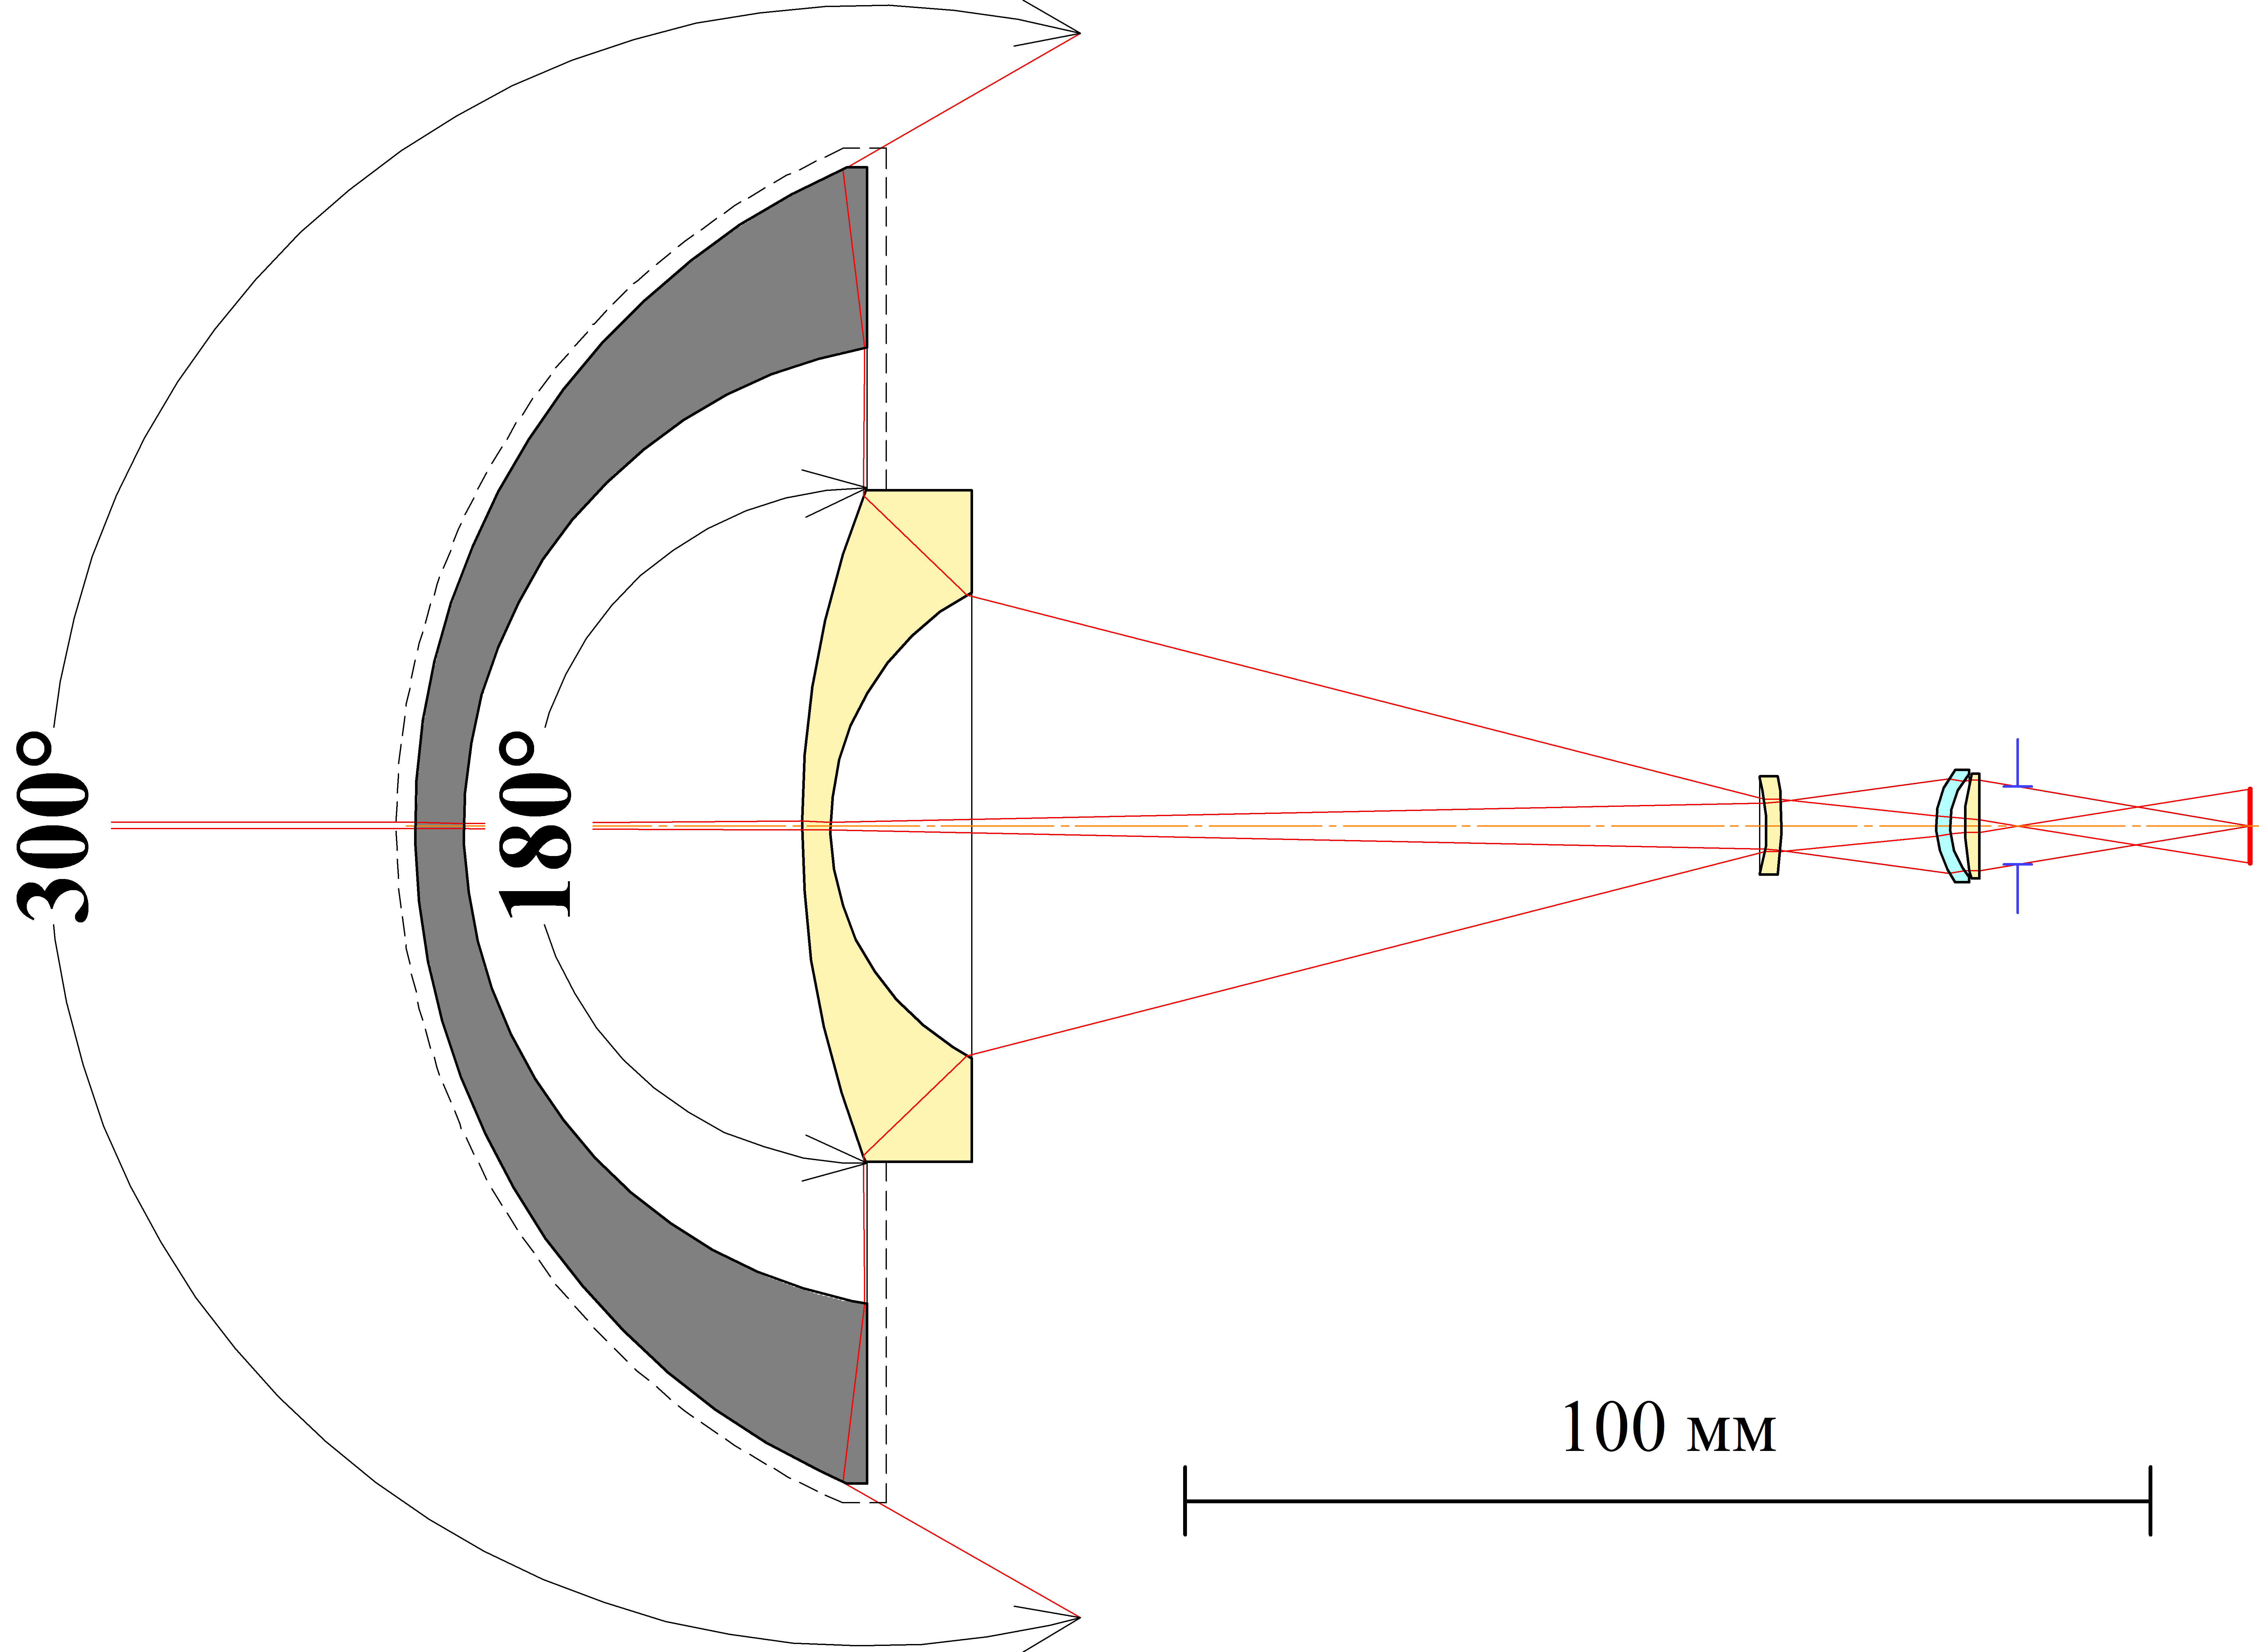 Рис. 2. Панорамная оптическая система со сменной суперсверхширокоугольной насадкой. По ходу лучей в системе использованы следующие материалы оптических элементов: Si, ZnSe, ZnSe, Al2O3, ZnSe.